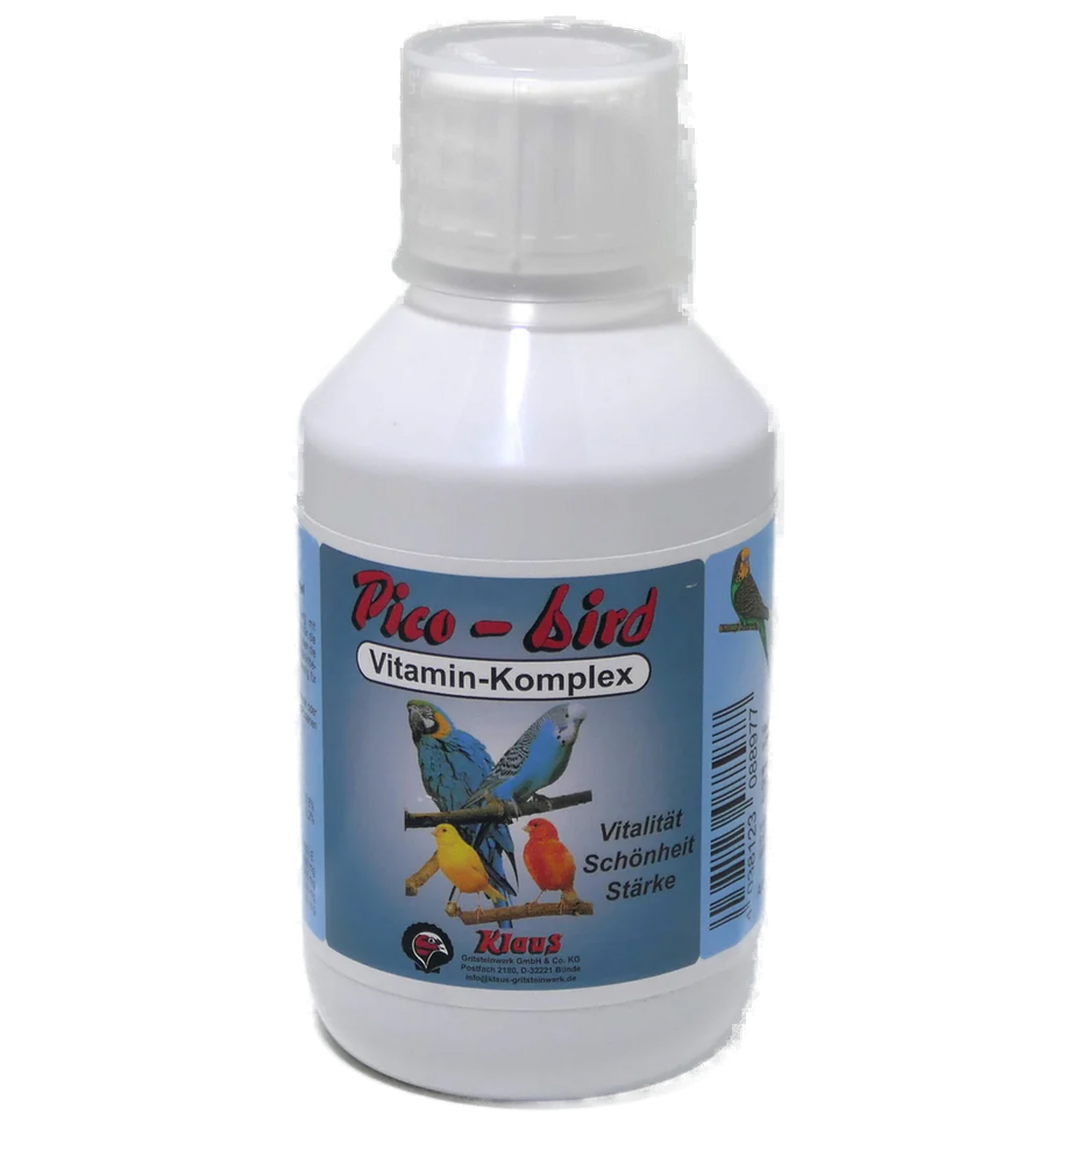 Pico-Bird Vitaminkomplex von Klaus